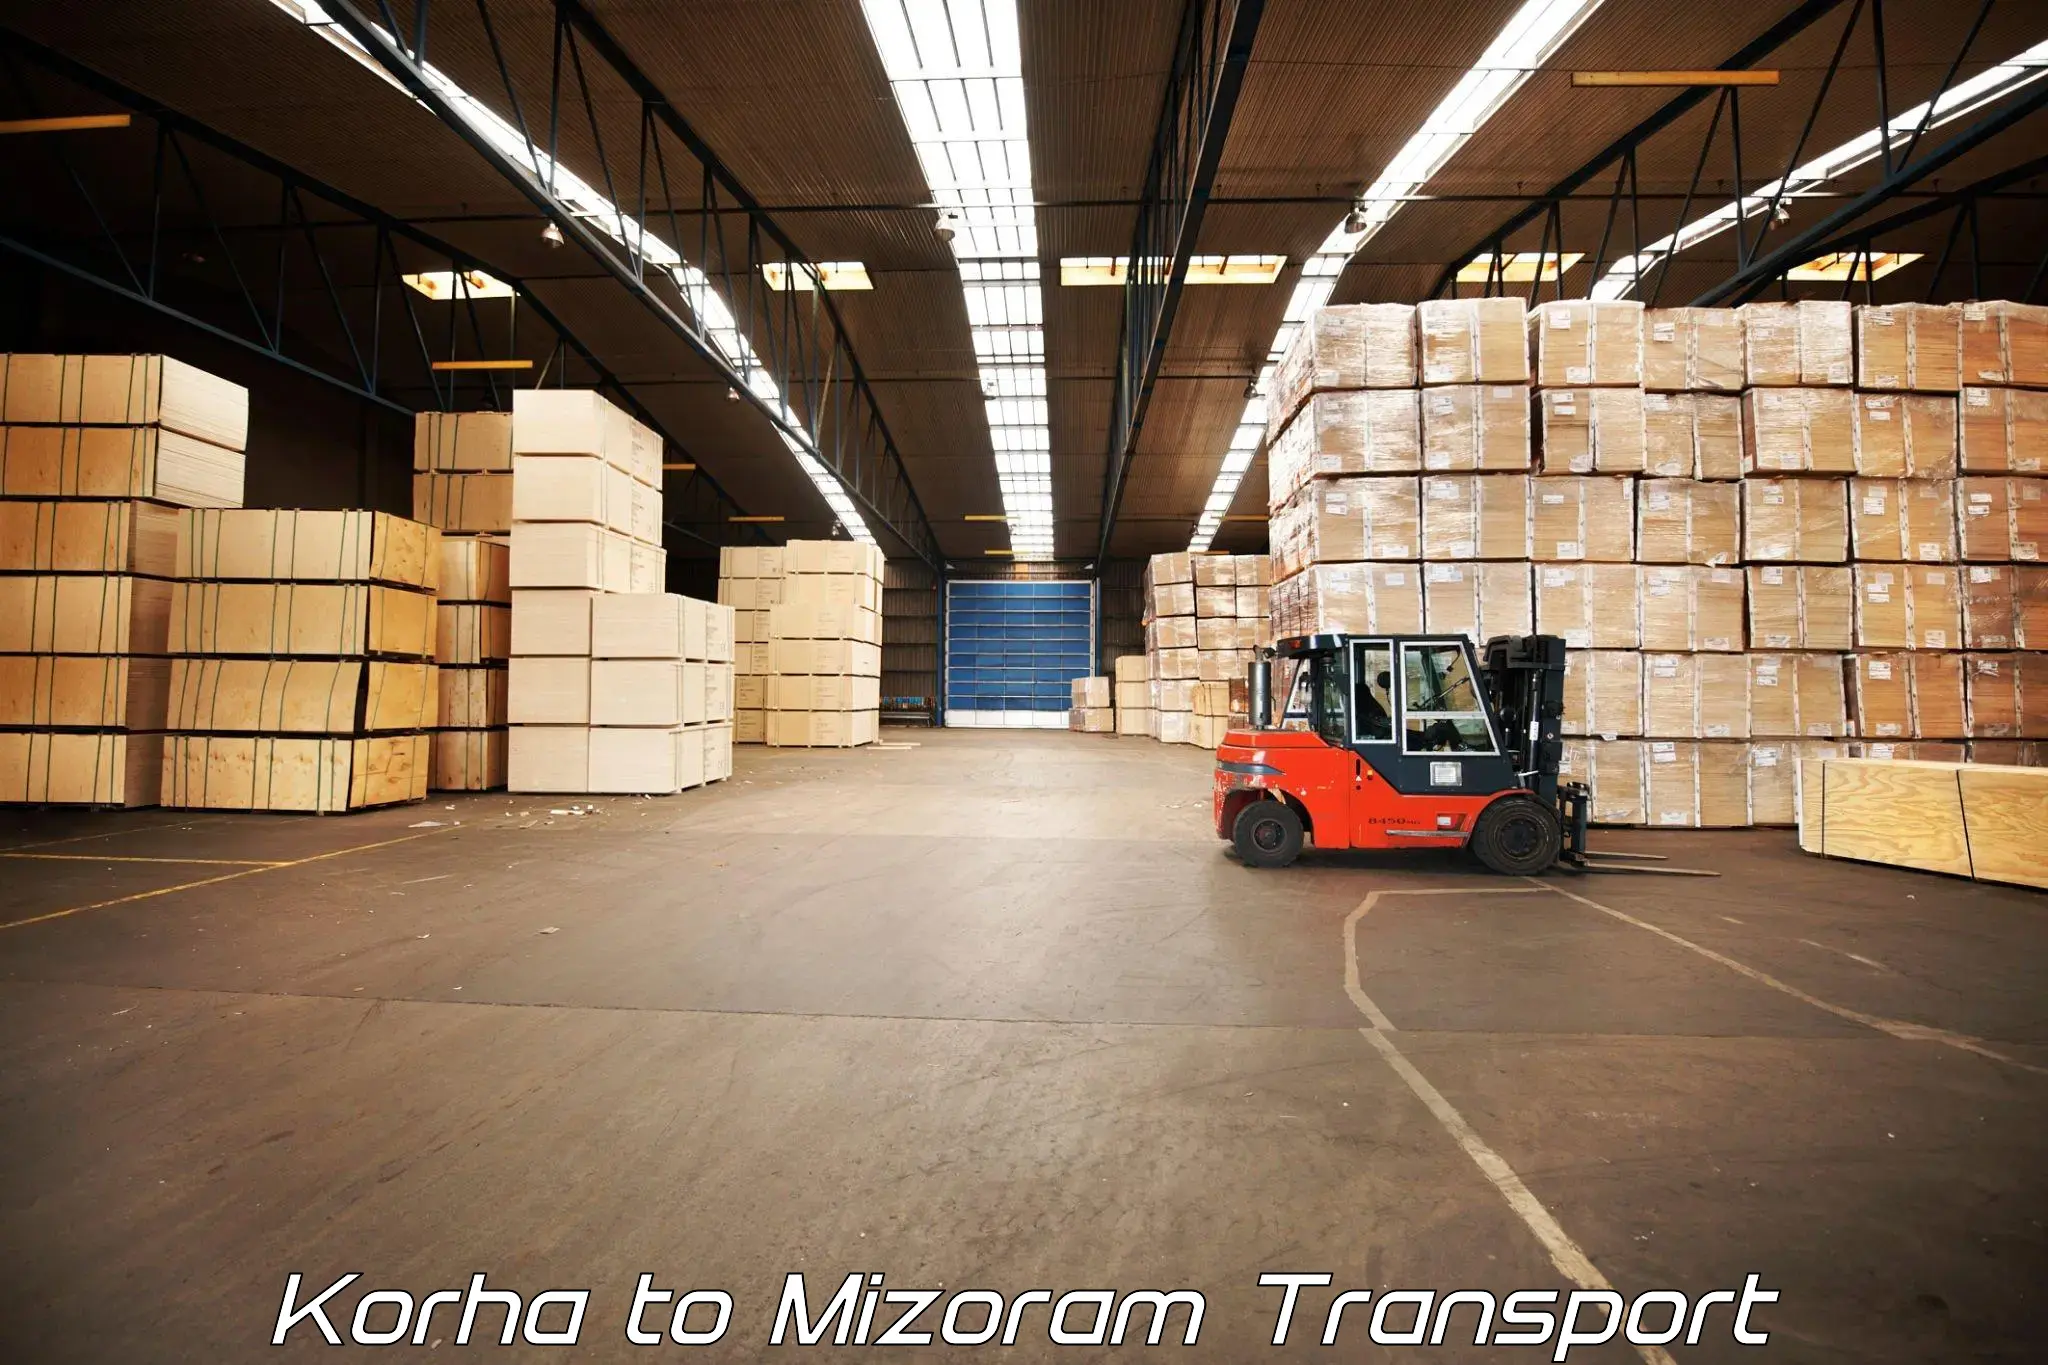 Cargo transportation services Korha to Thenzawl